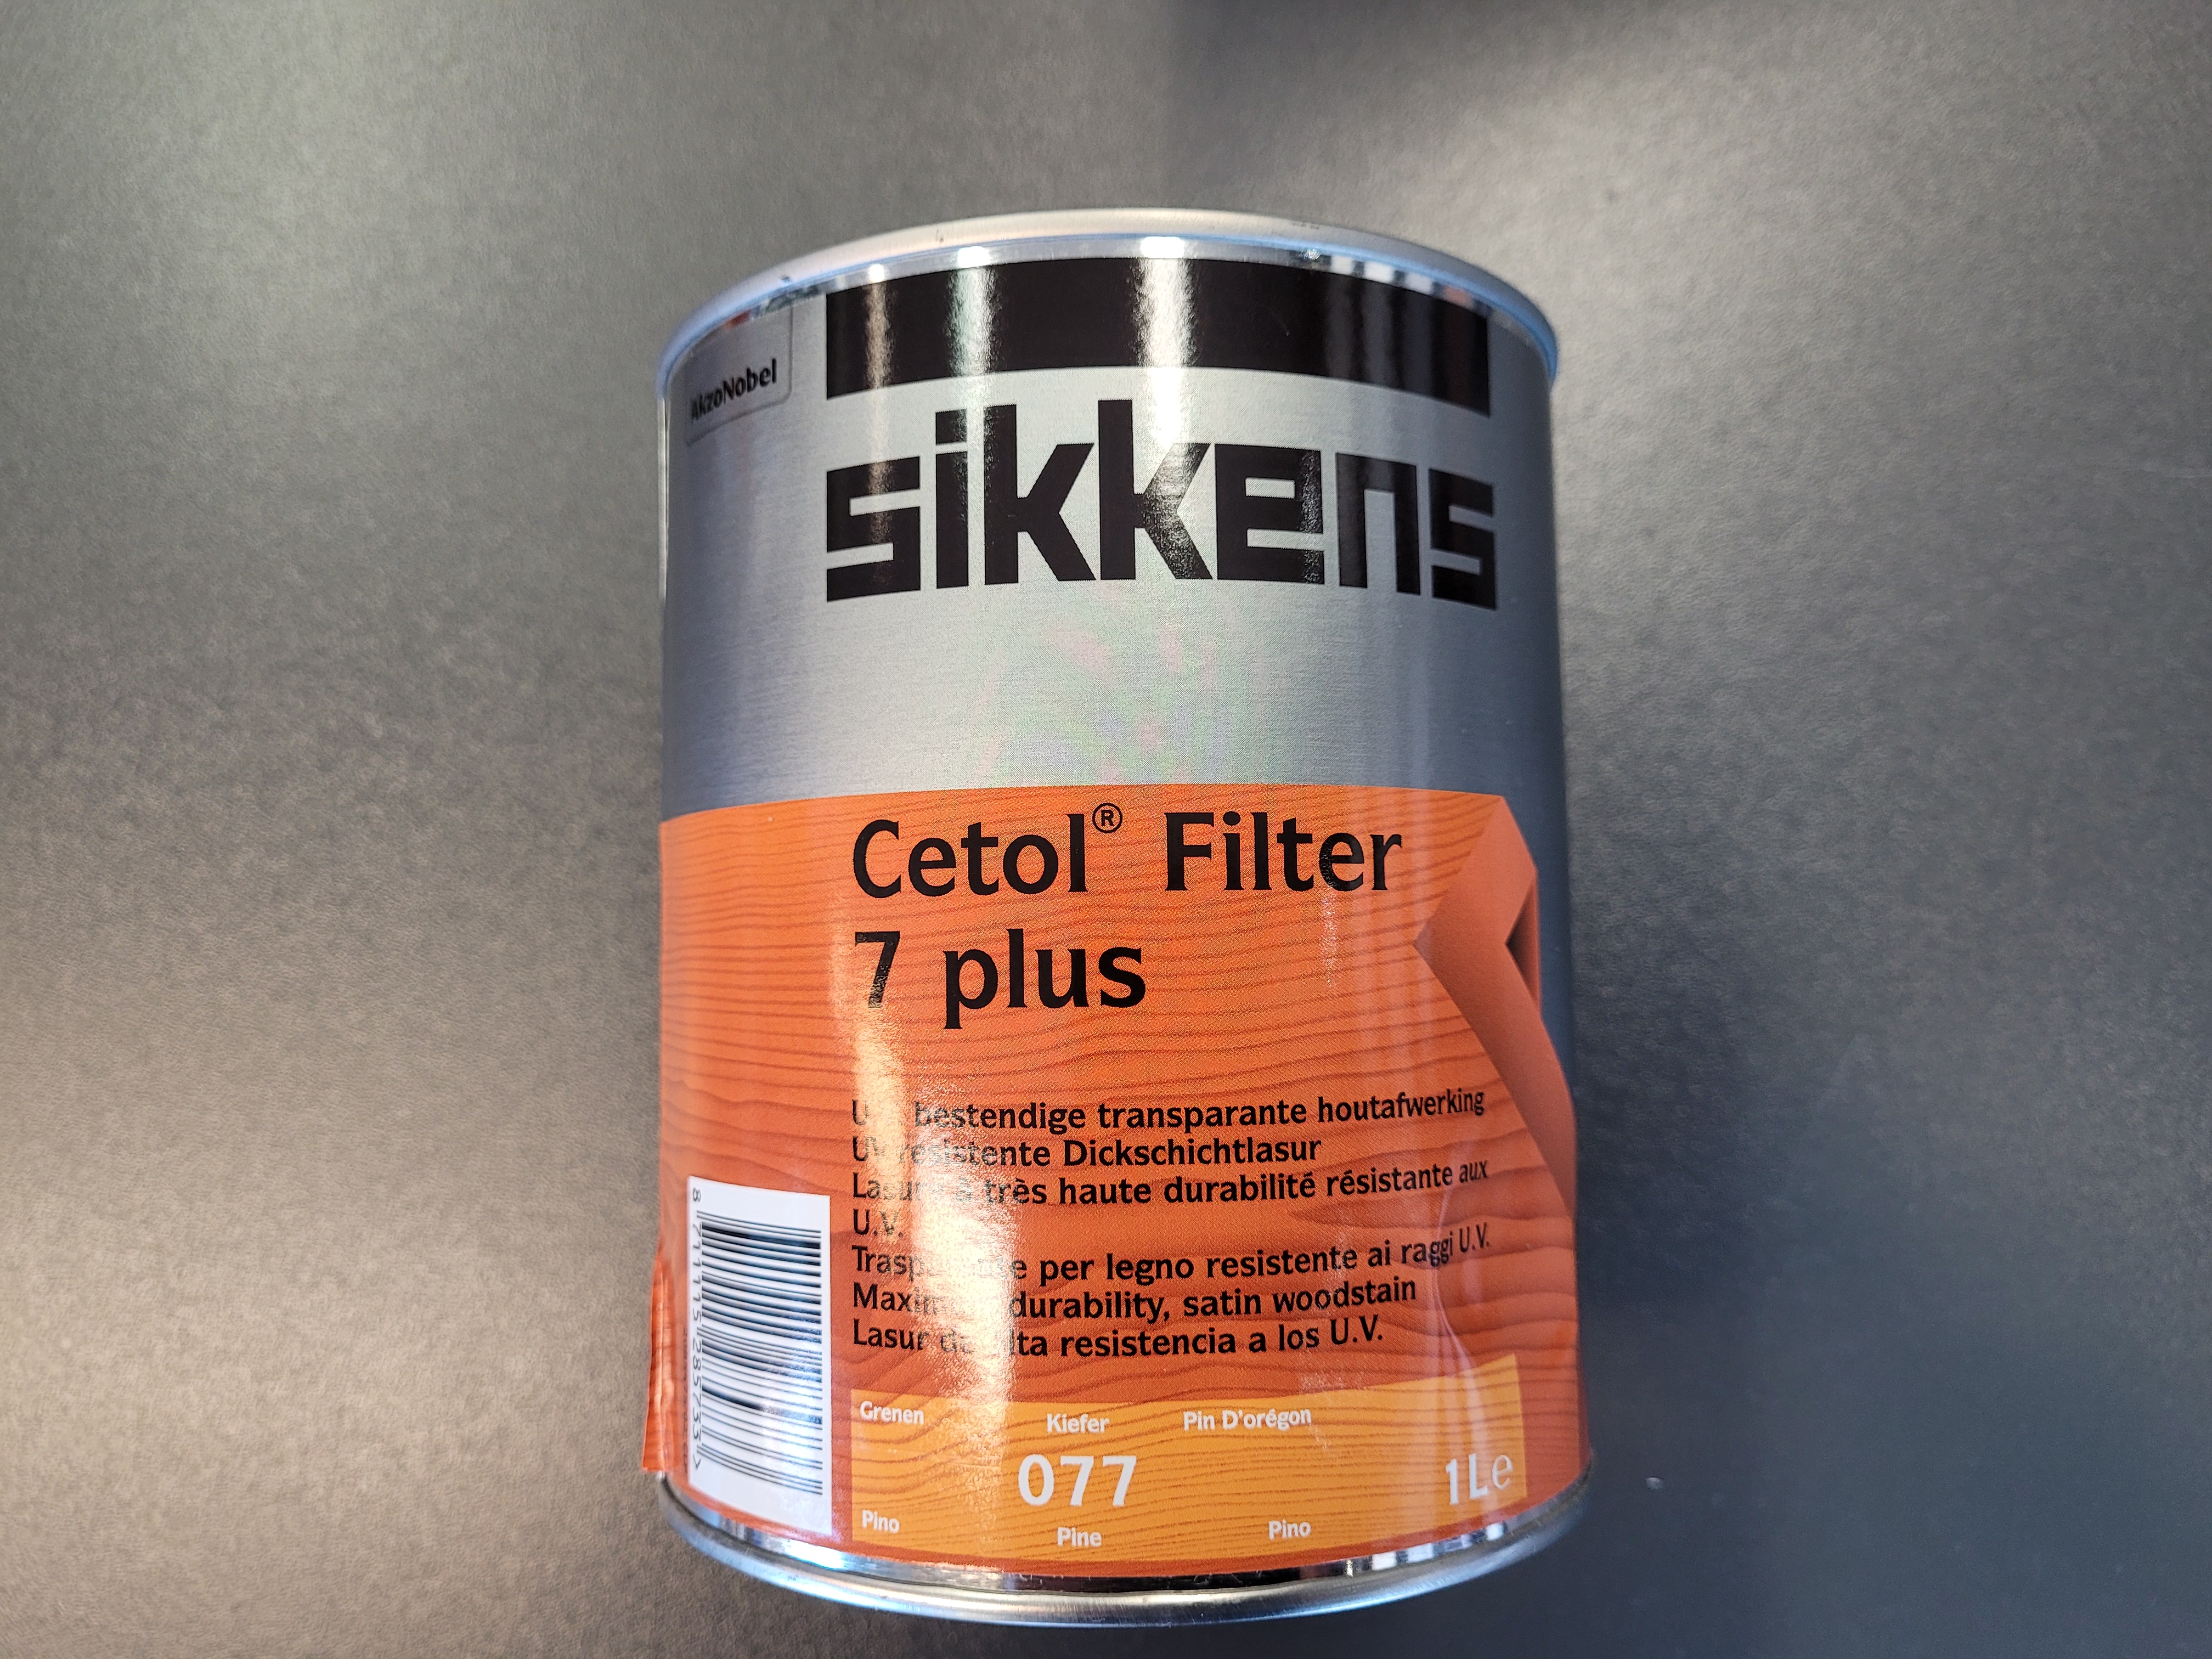 Sikkens Cetol Filter 7 plus 1,0 ltr.,   0,5 ltr.-19,95 €   2,5 ltr.-89,95 €